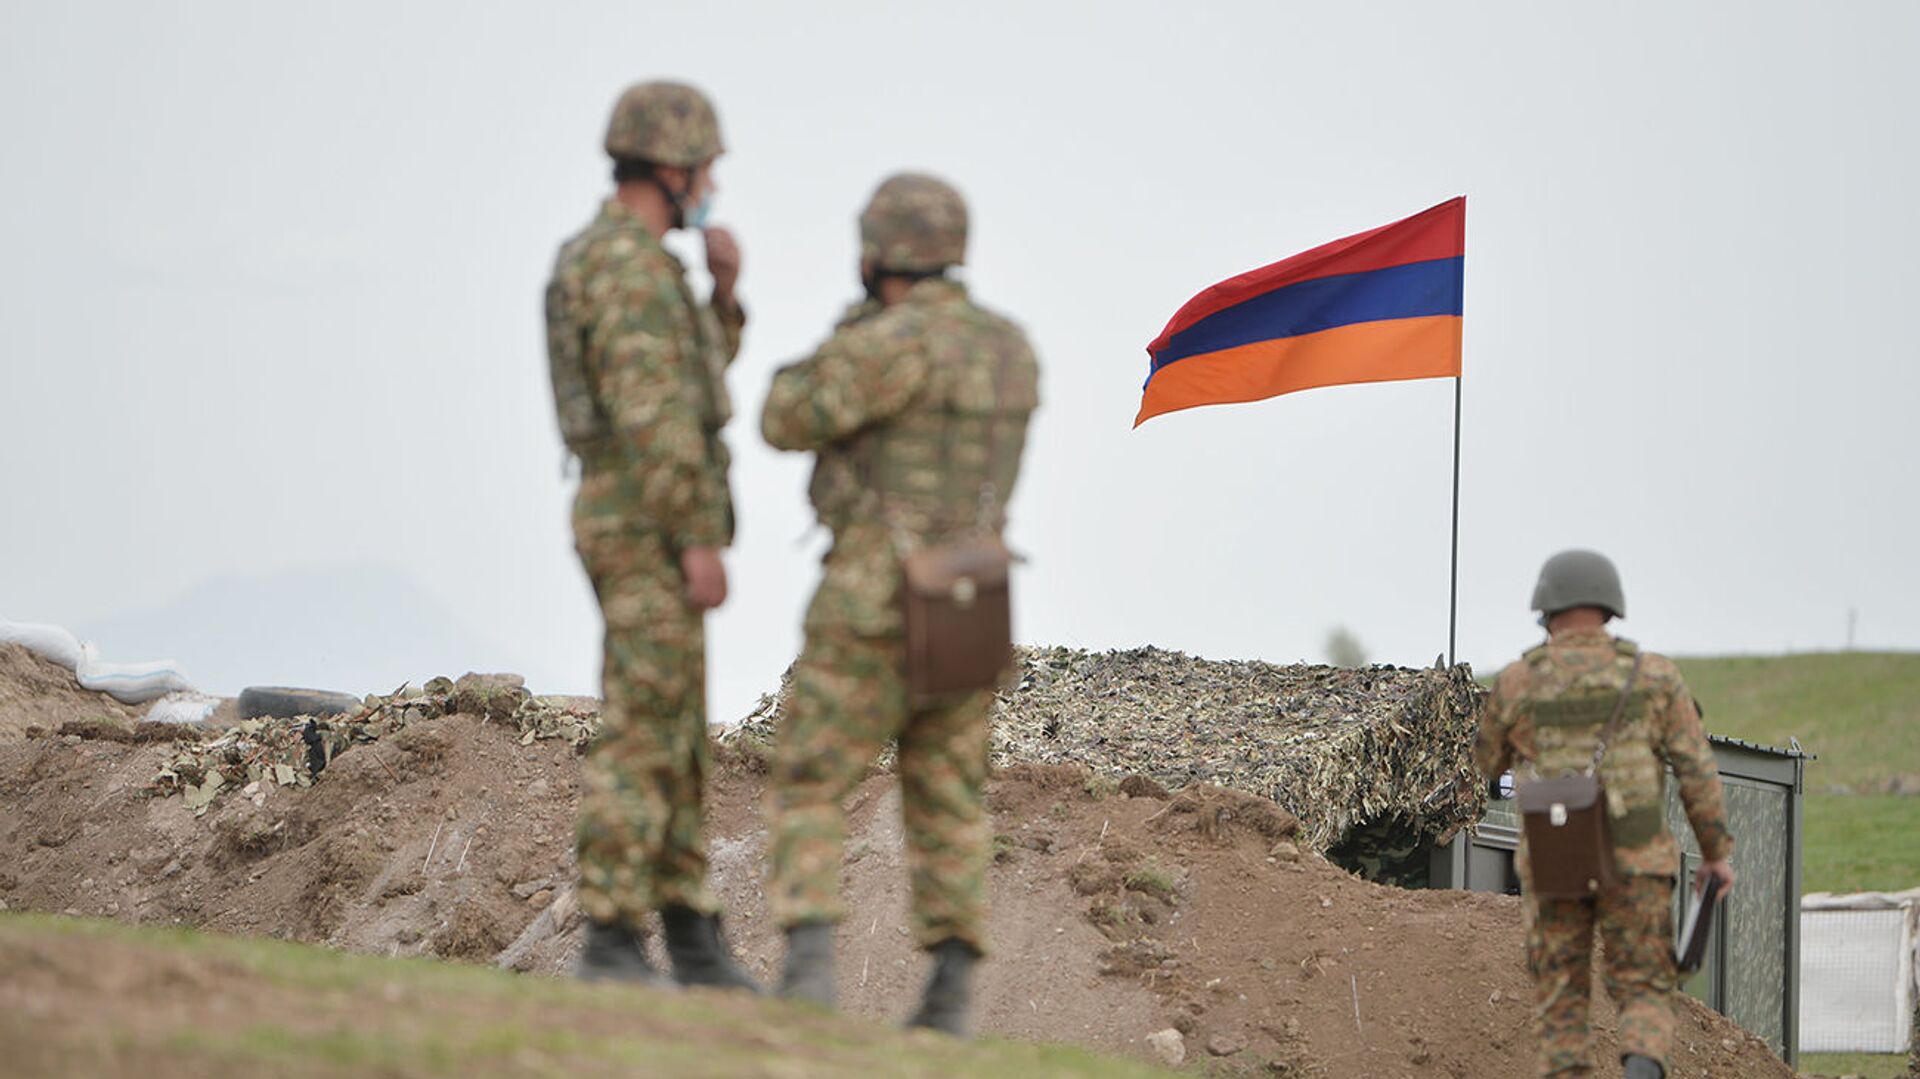 Армянские военнослужащие на армянсо-азербайджанской границе - Sputnik Армения, 1920, 14.11.2021